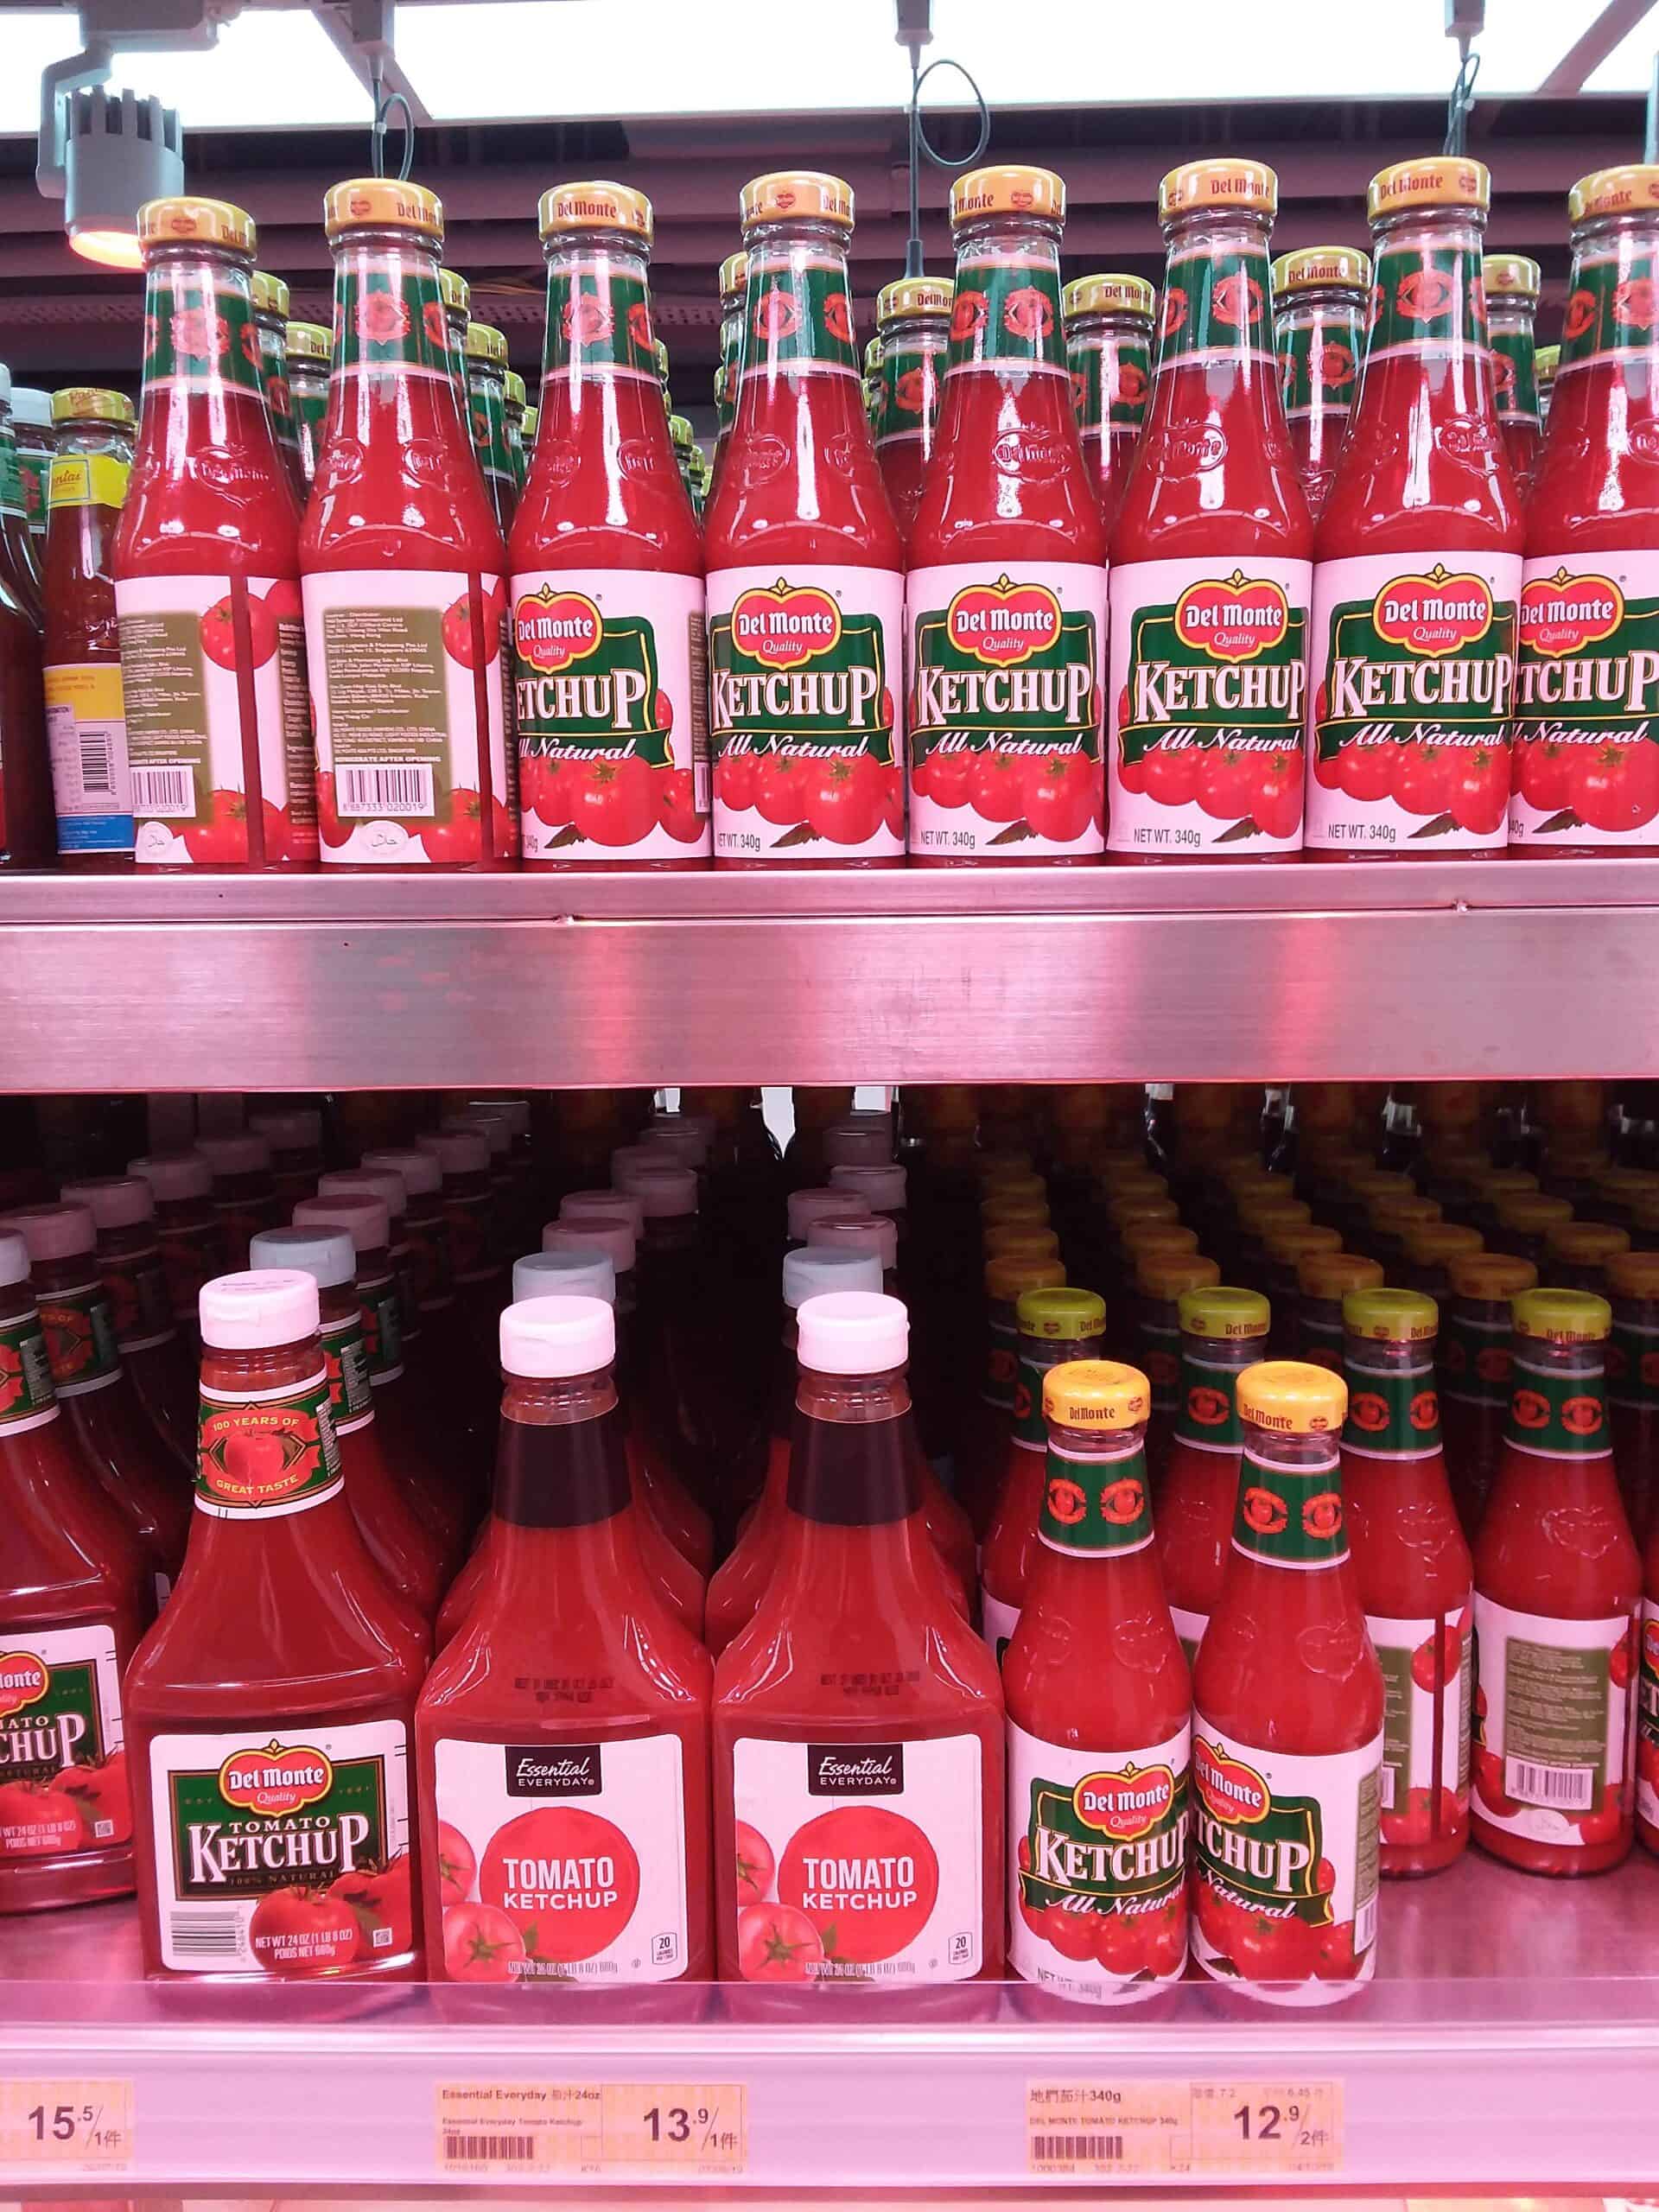 Del Monte ketchup bottles